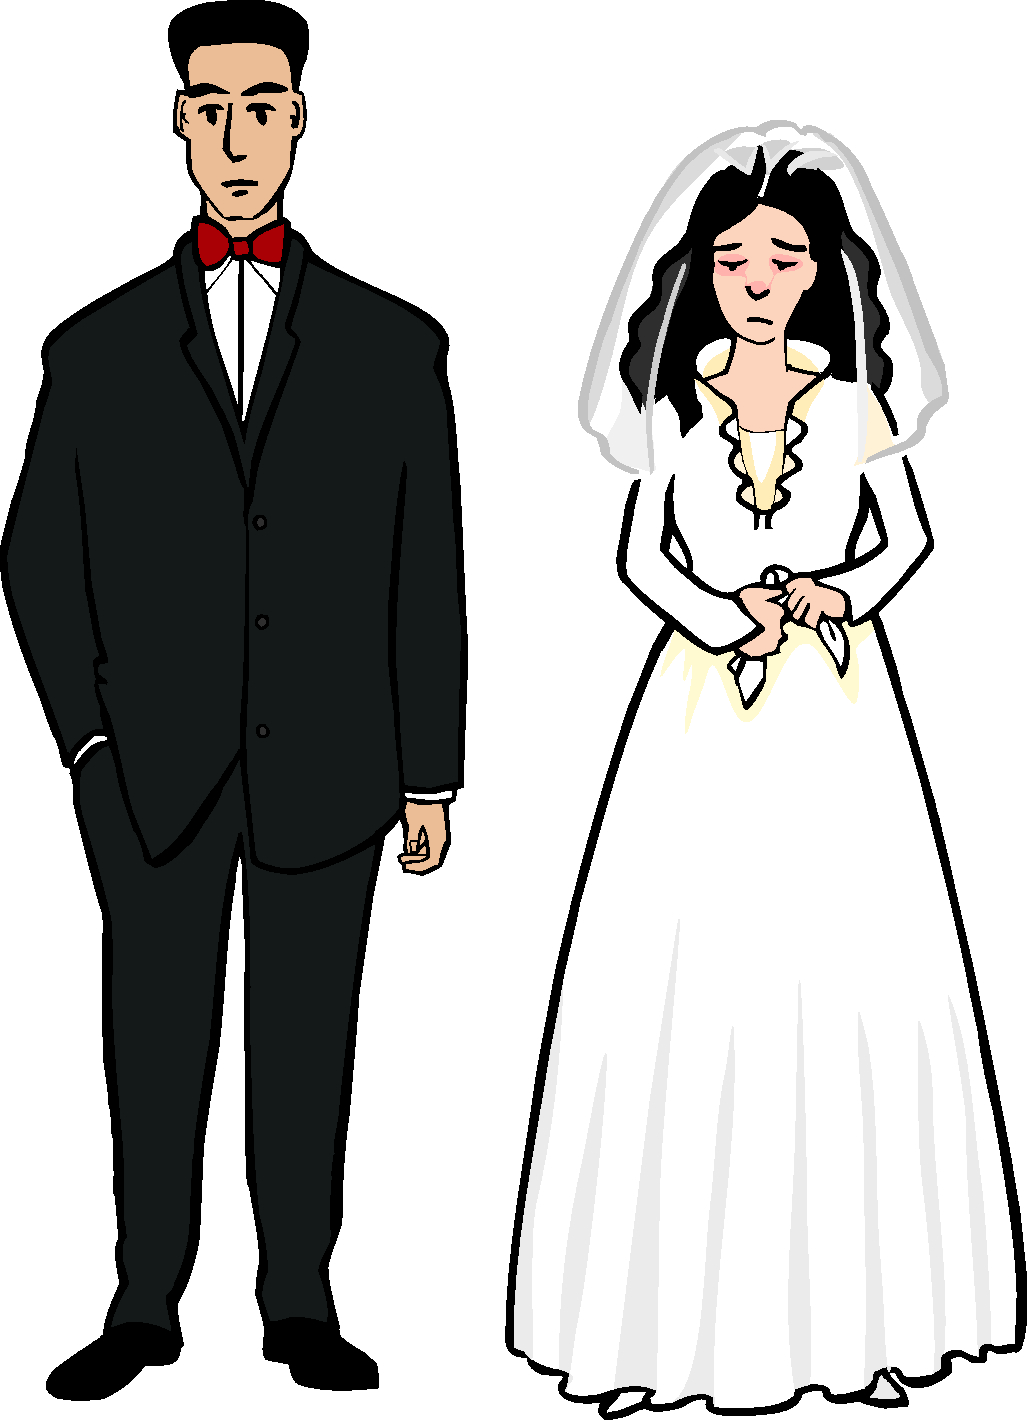 Auf dem gezeichneten Bild sind ein Mann und eine Frau zu sehen. Der Mann hat einen schwarzen Anzug an und trägt eine rote Fliege. Die Frau trägt ein Brautkleid und einen Schleier. Und sieht sehr traurig aus.